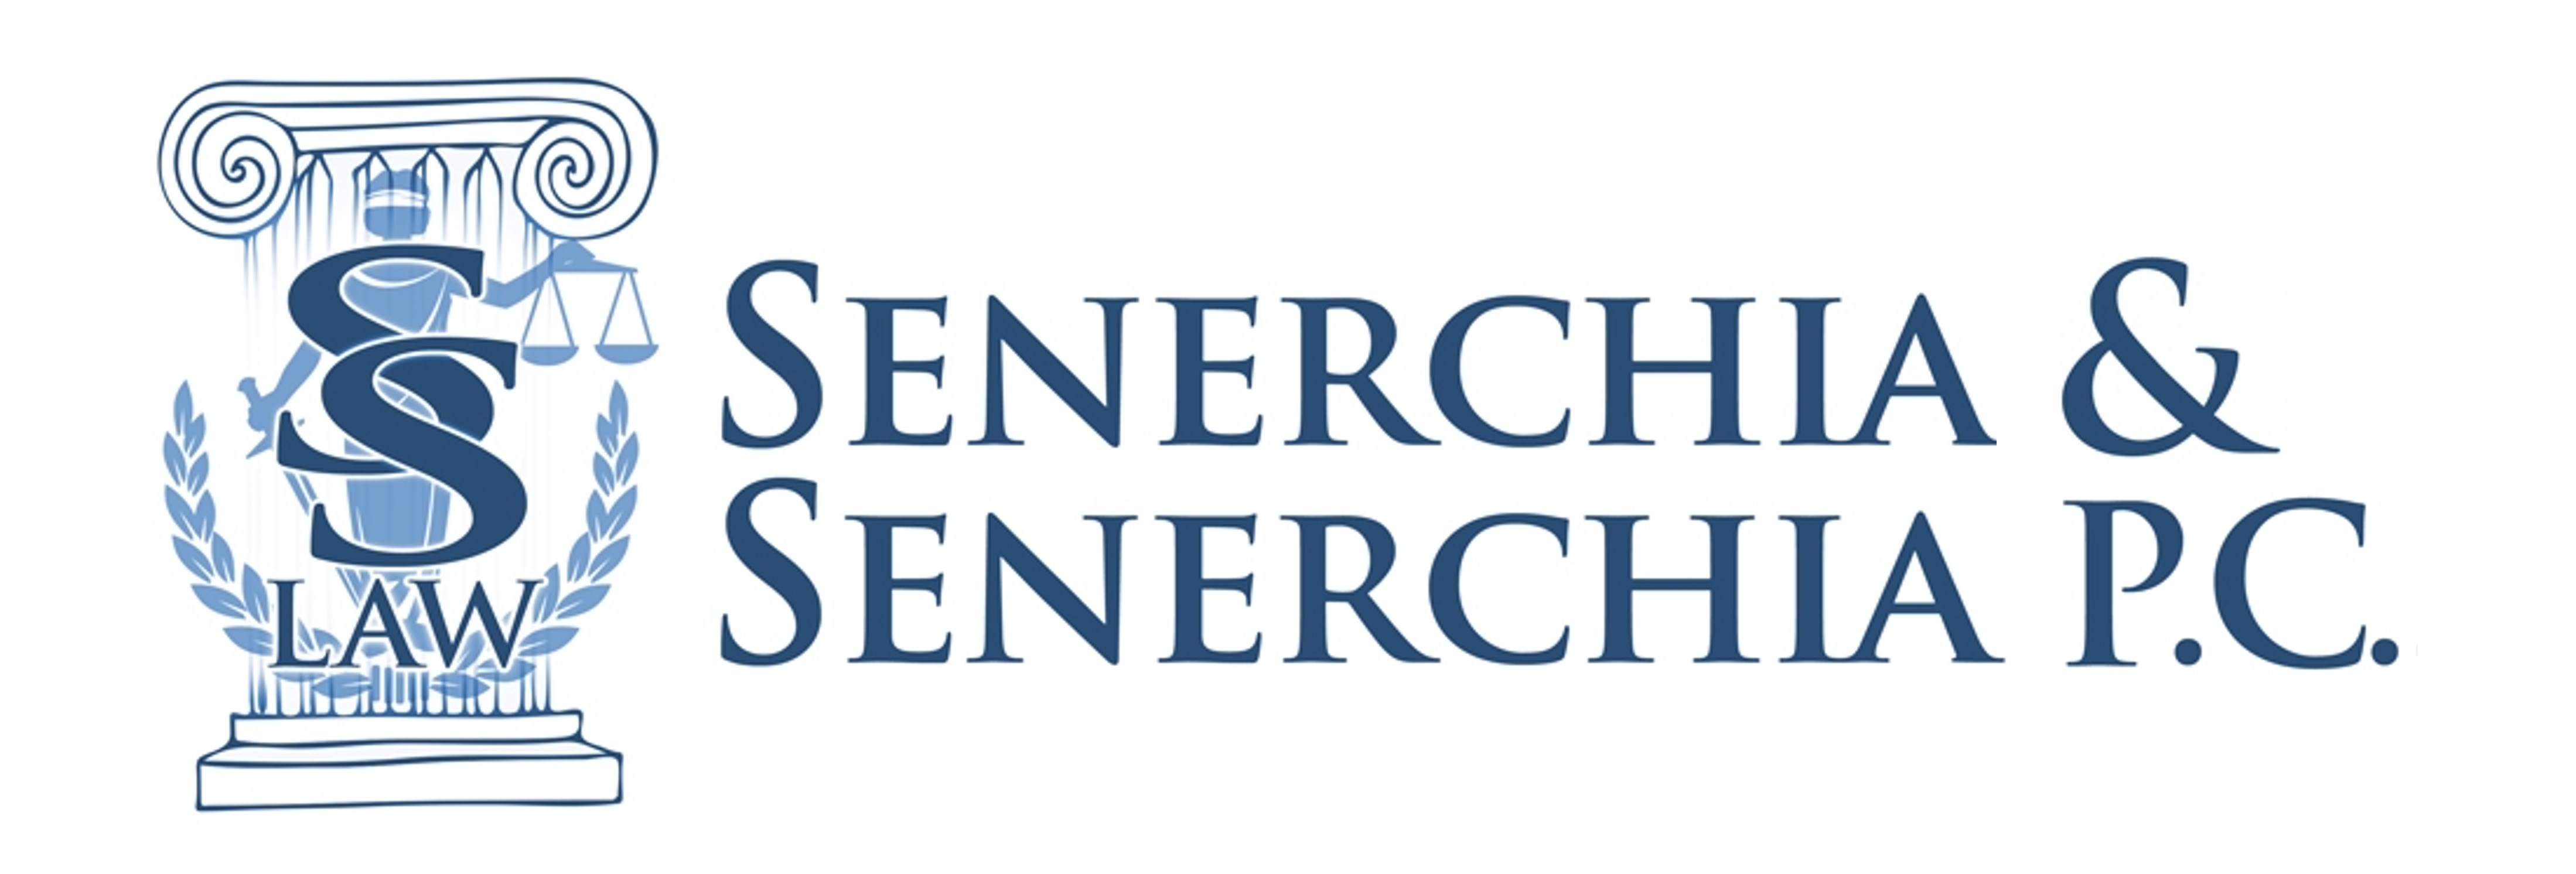 Senerchia & Senerchia P.C. logo logo